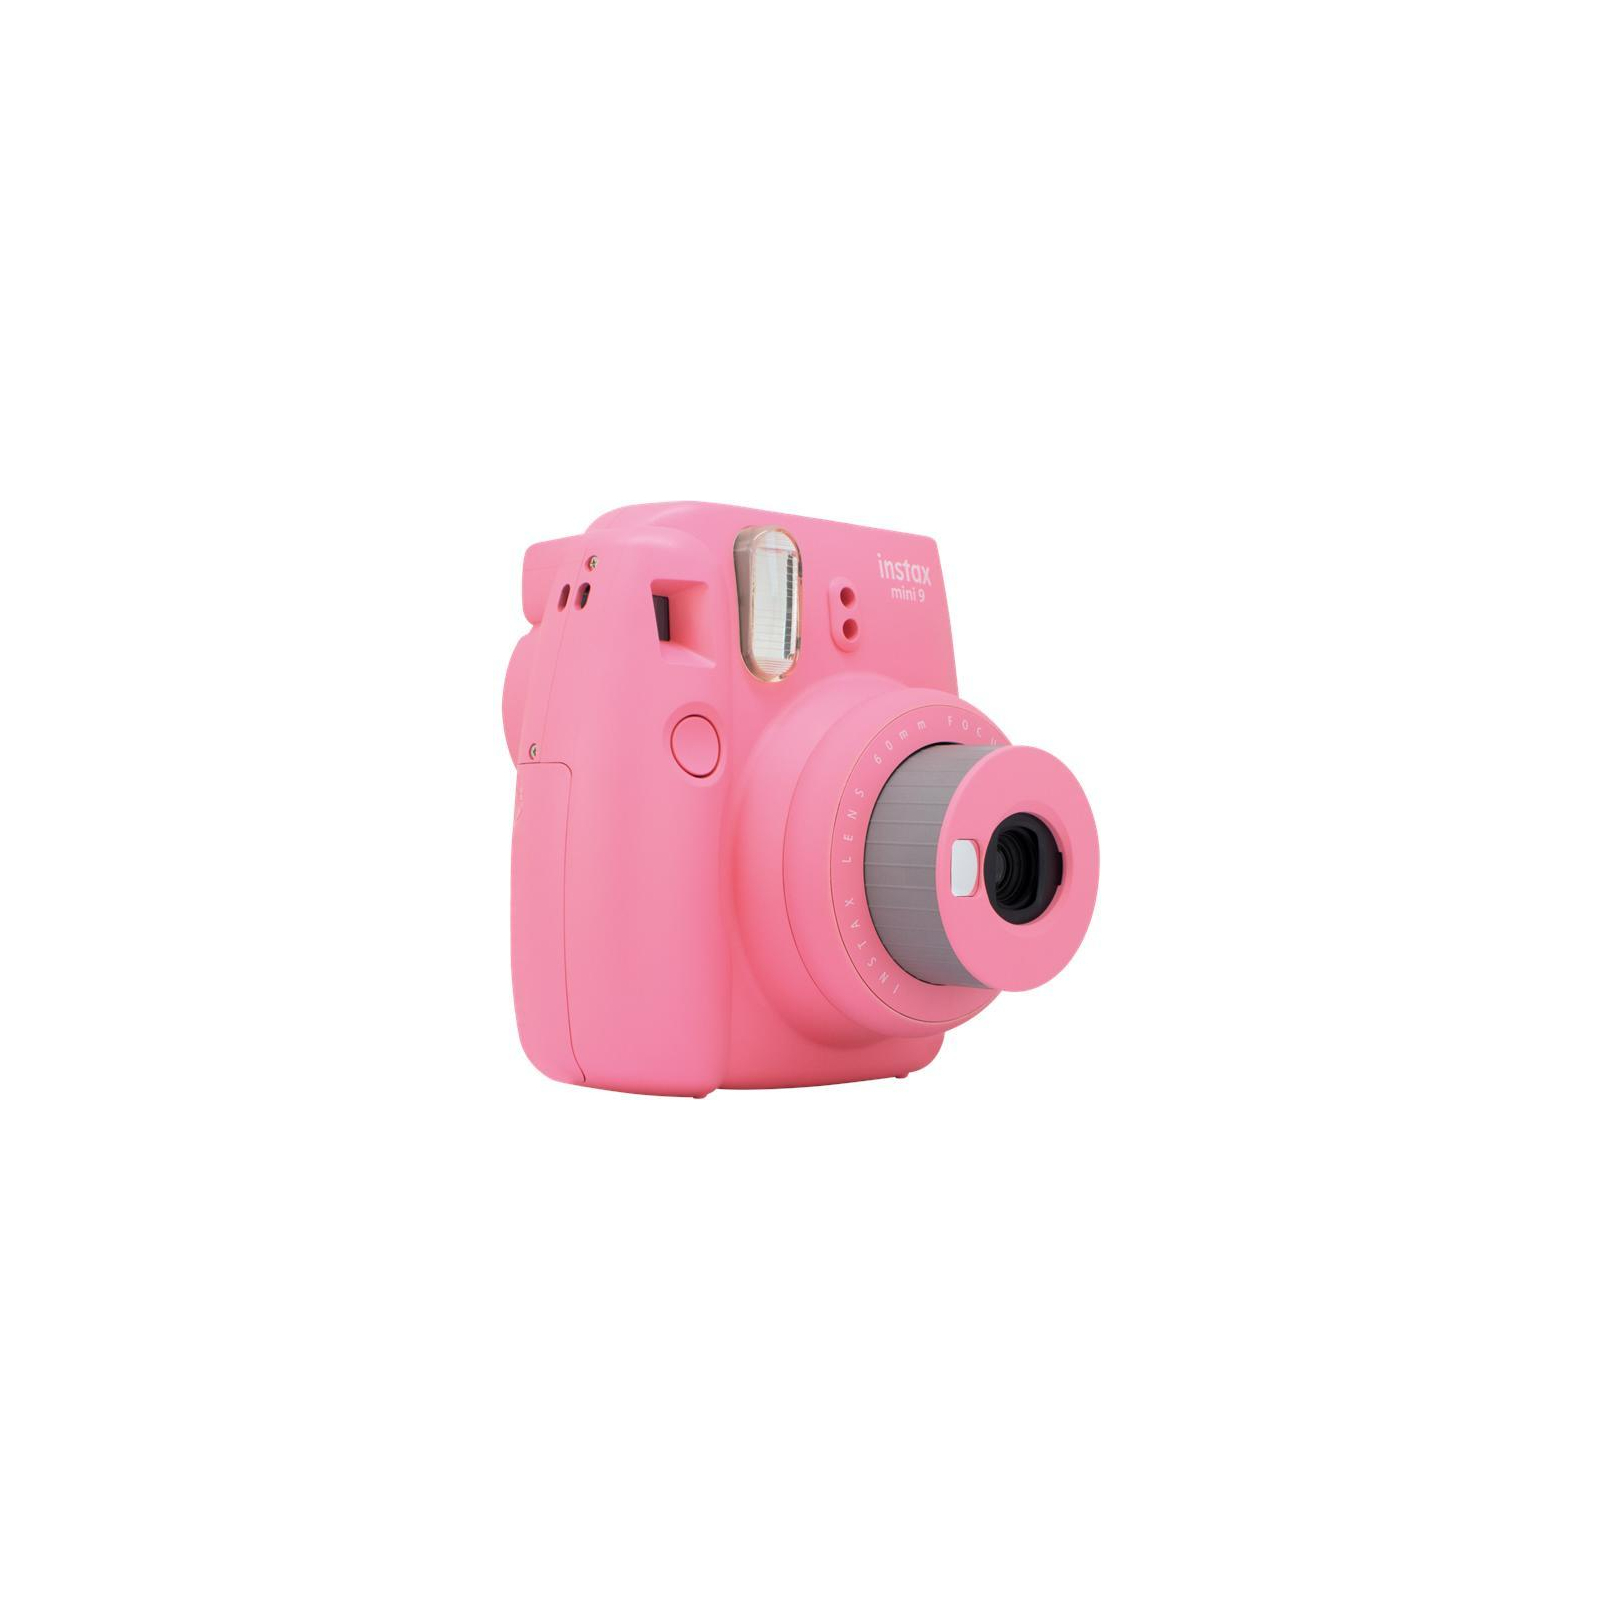 Камера миттєвого друку Fujifilm Instax Mini 9 CAMERA FLA PINK EX D N (16550538) зображення 3